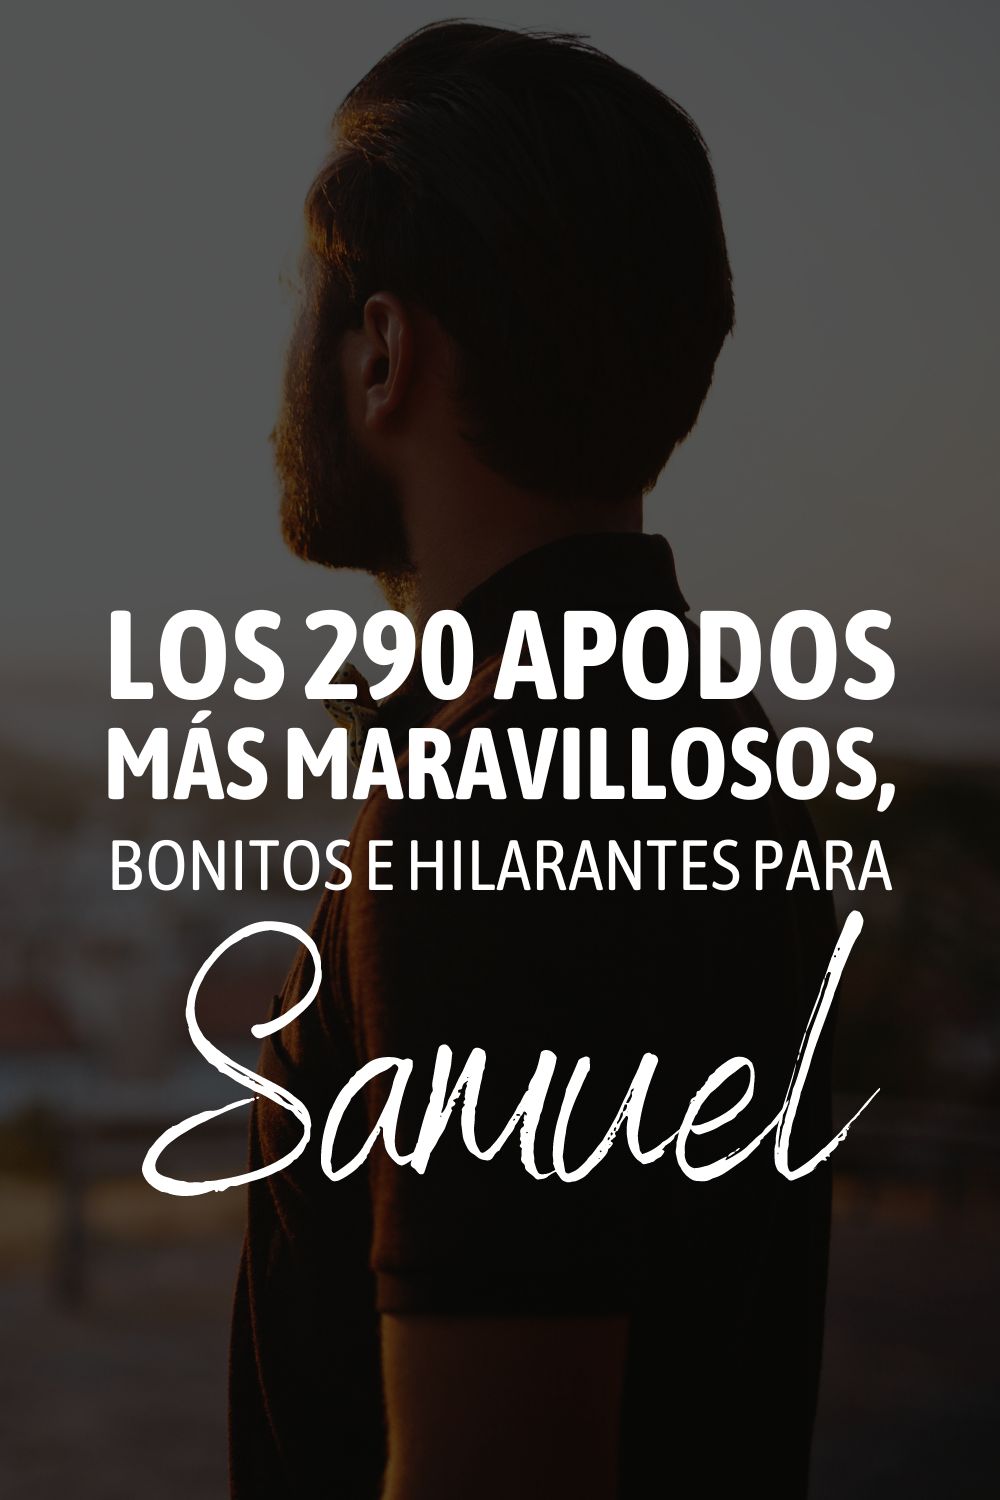 Los 290 apodos más maravillosos, bonitos e hilarantes para Samuel